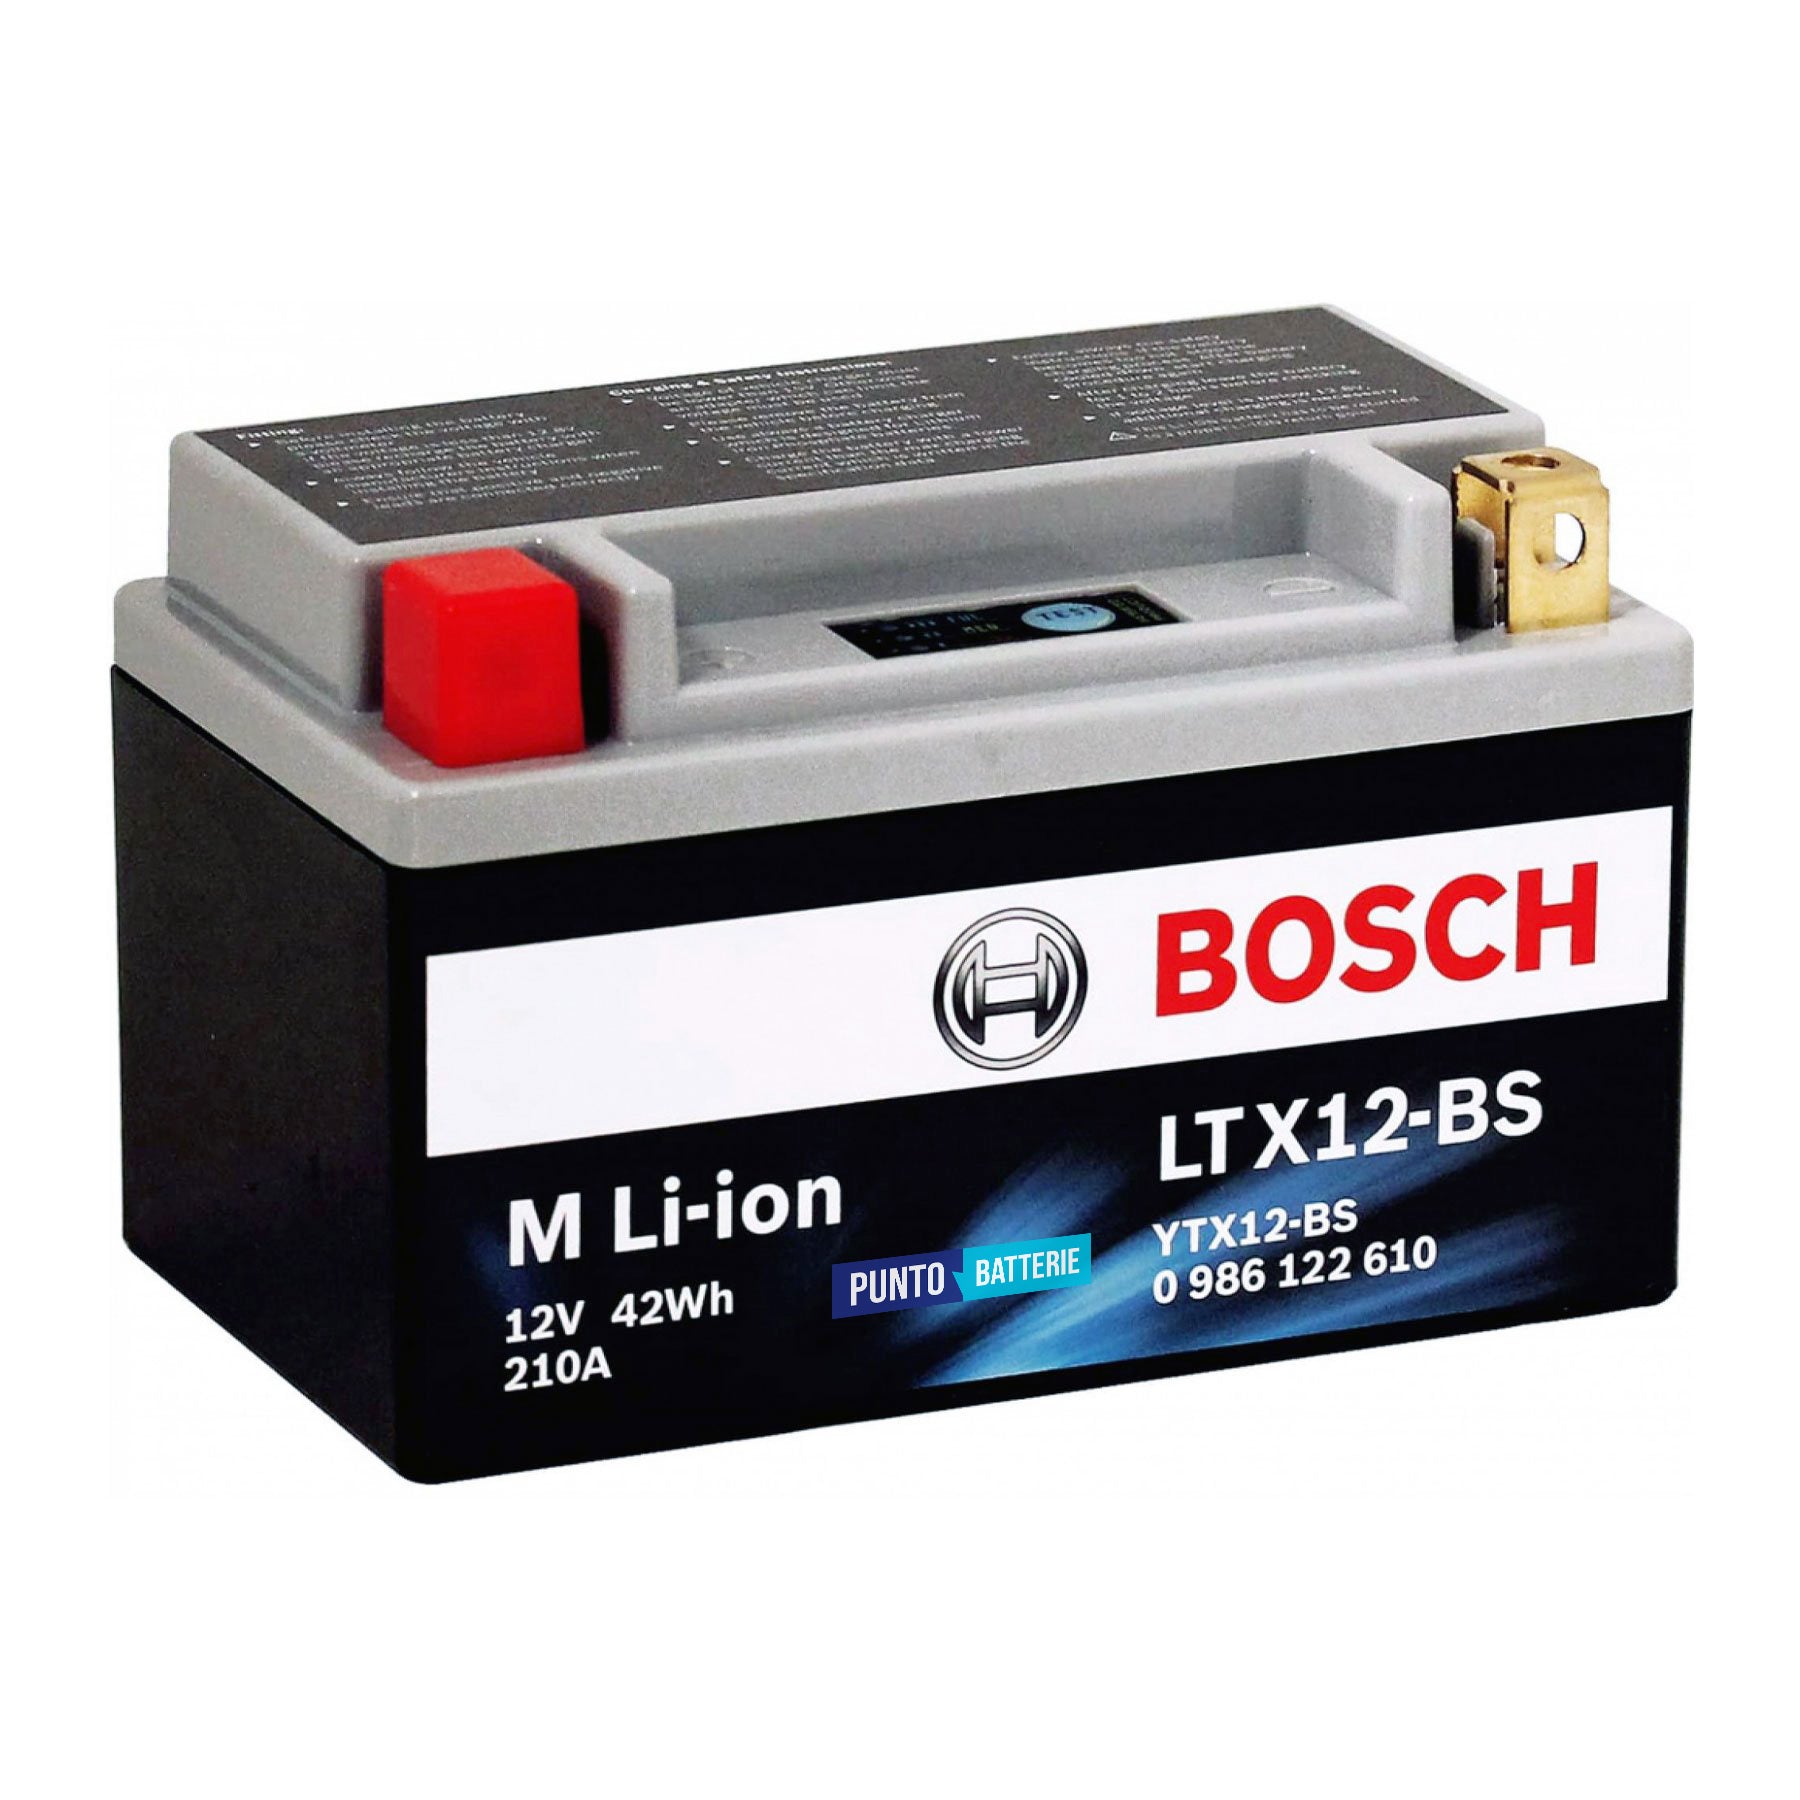 Batteria originale Bosch M Li-ion LTX12-BS, dimensioni 150 x 65 x 130, polo positivo a sinistra, 12 volt, 3 amperora, 210 ampere. Batteria per moto, scooter e powersport.